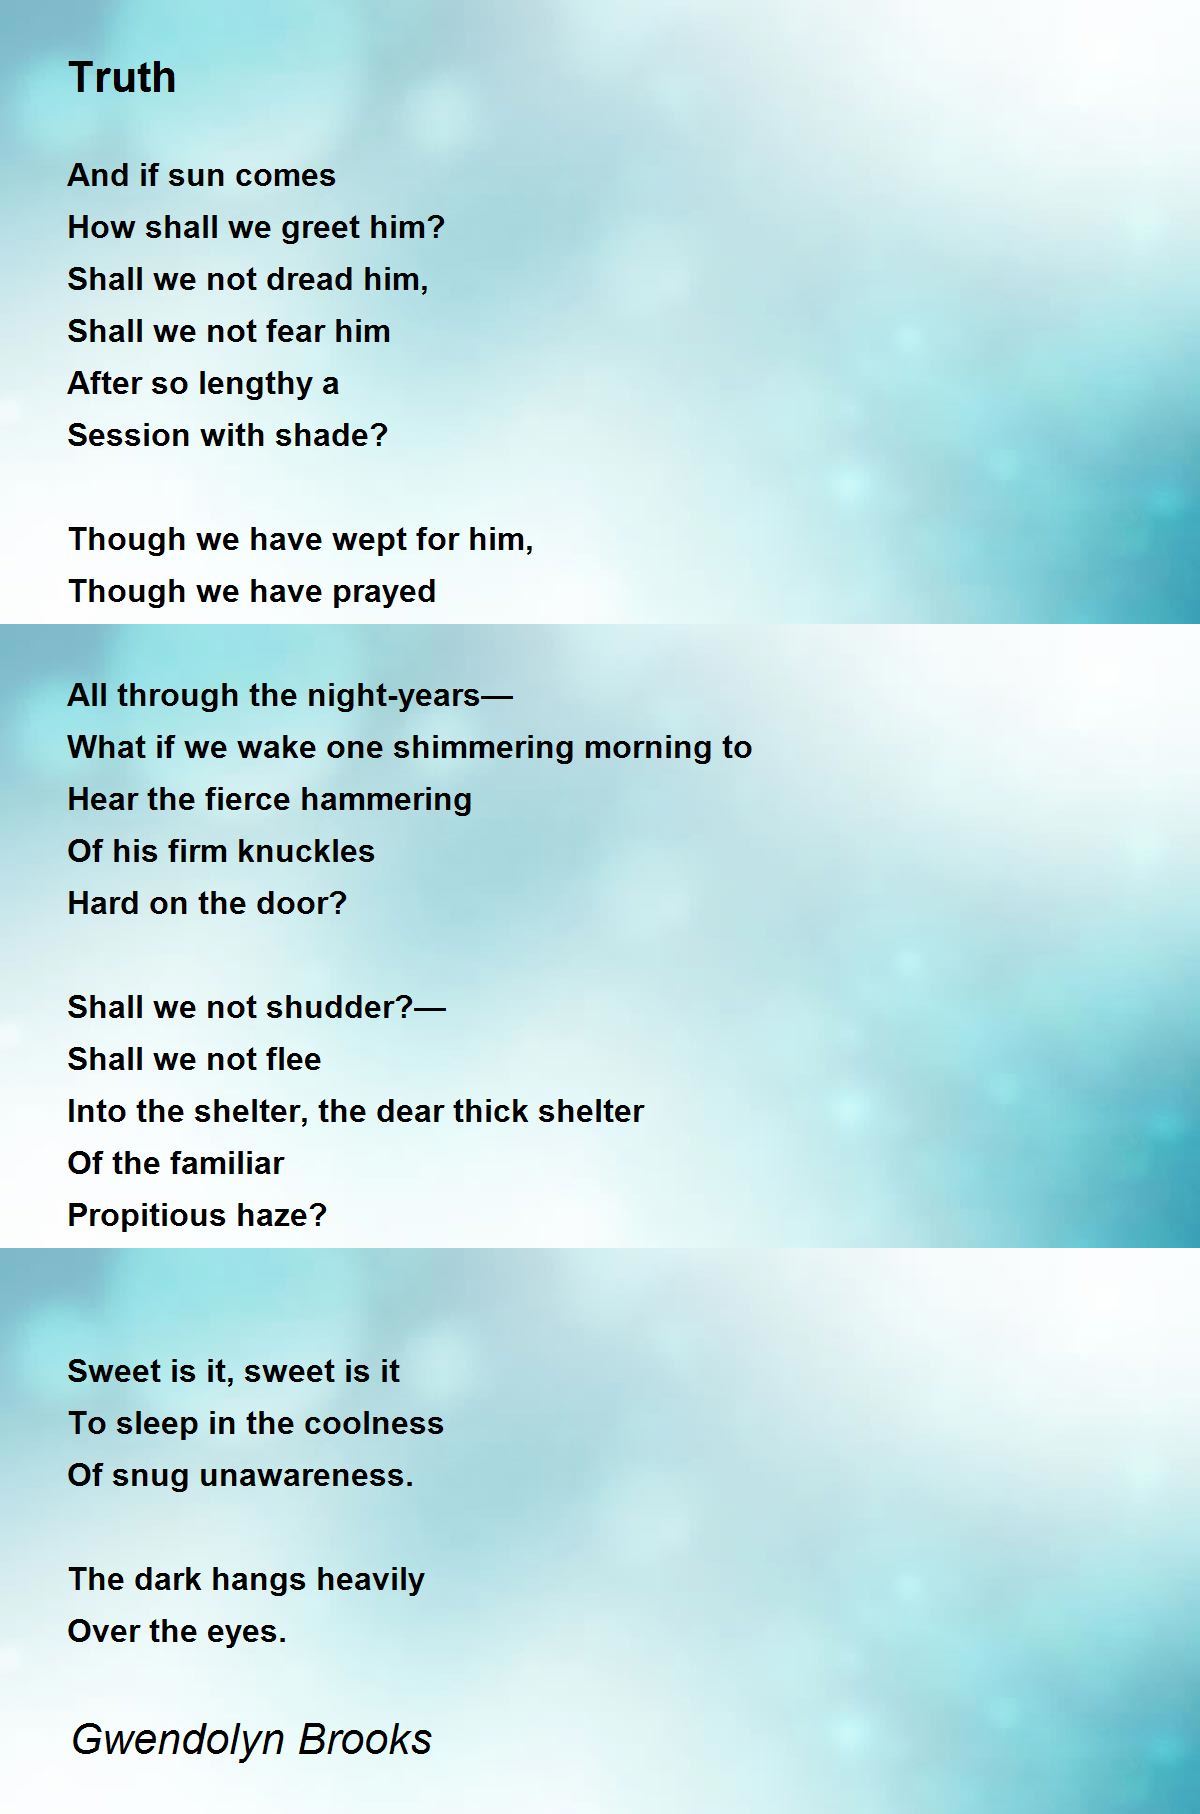 Truth Poem by Gwendolyn Brooks - Poem Hunter